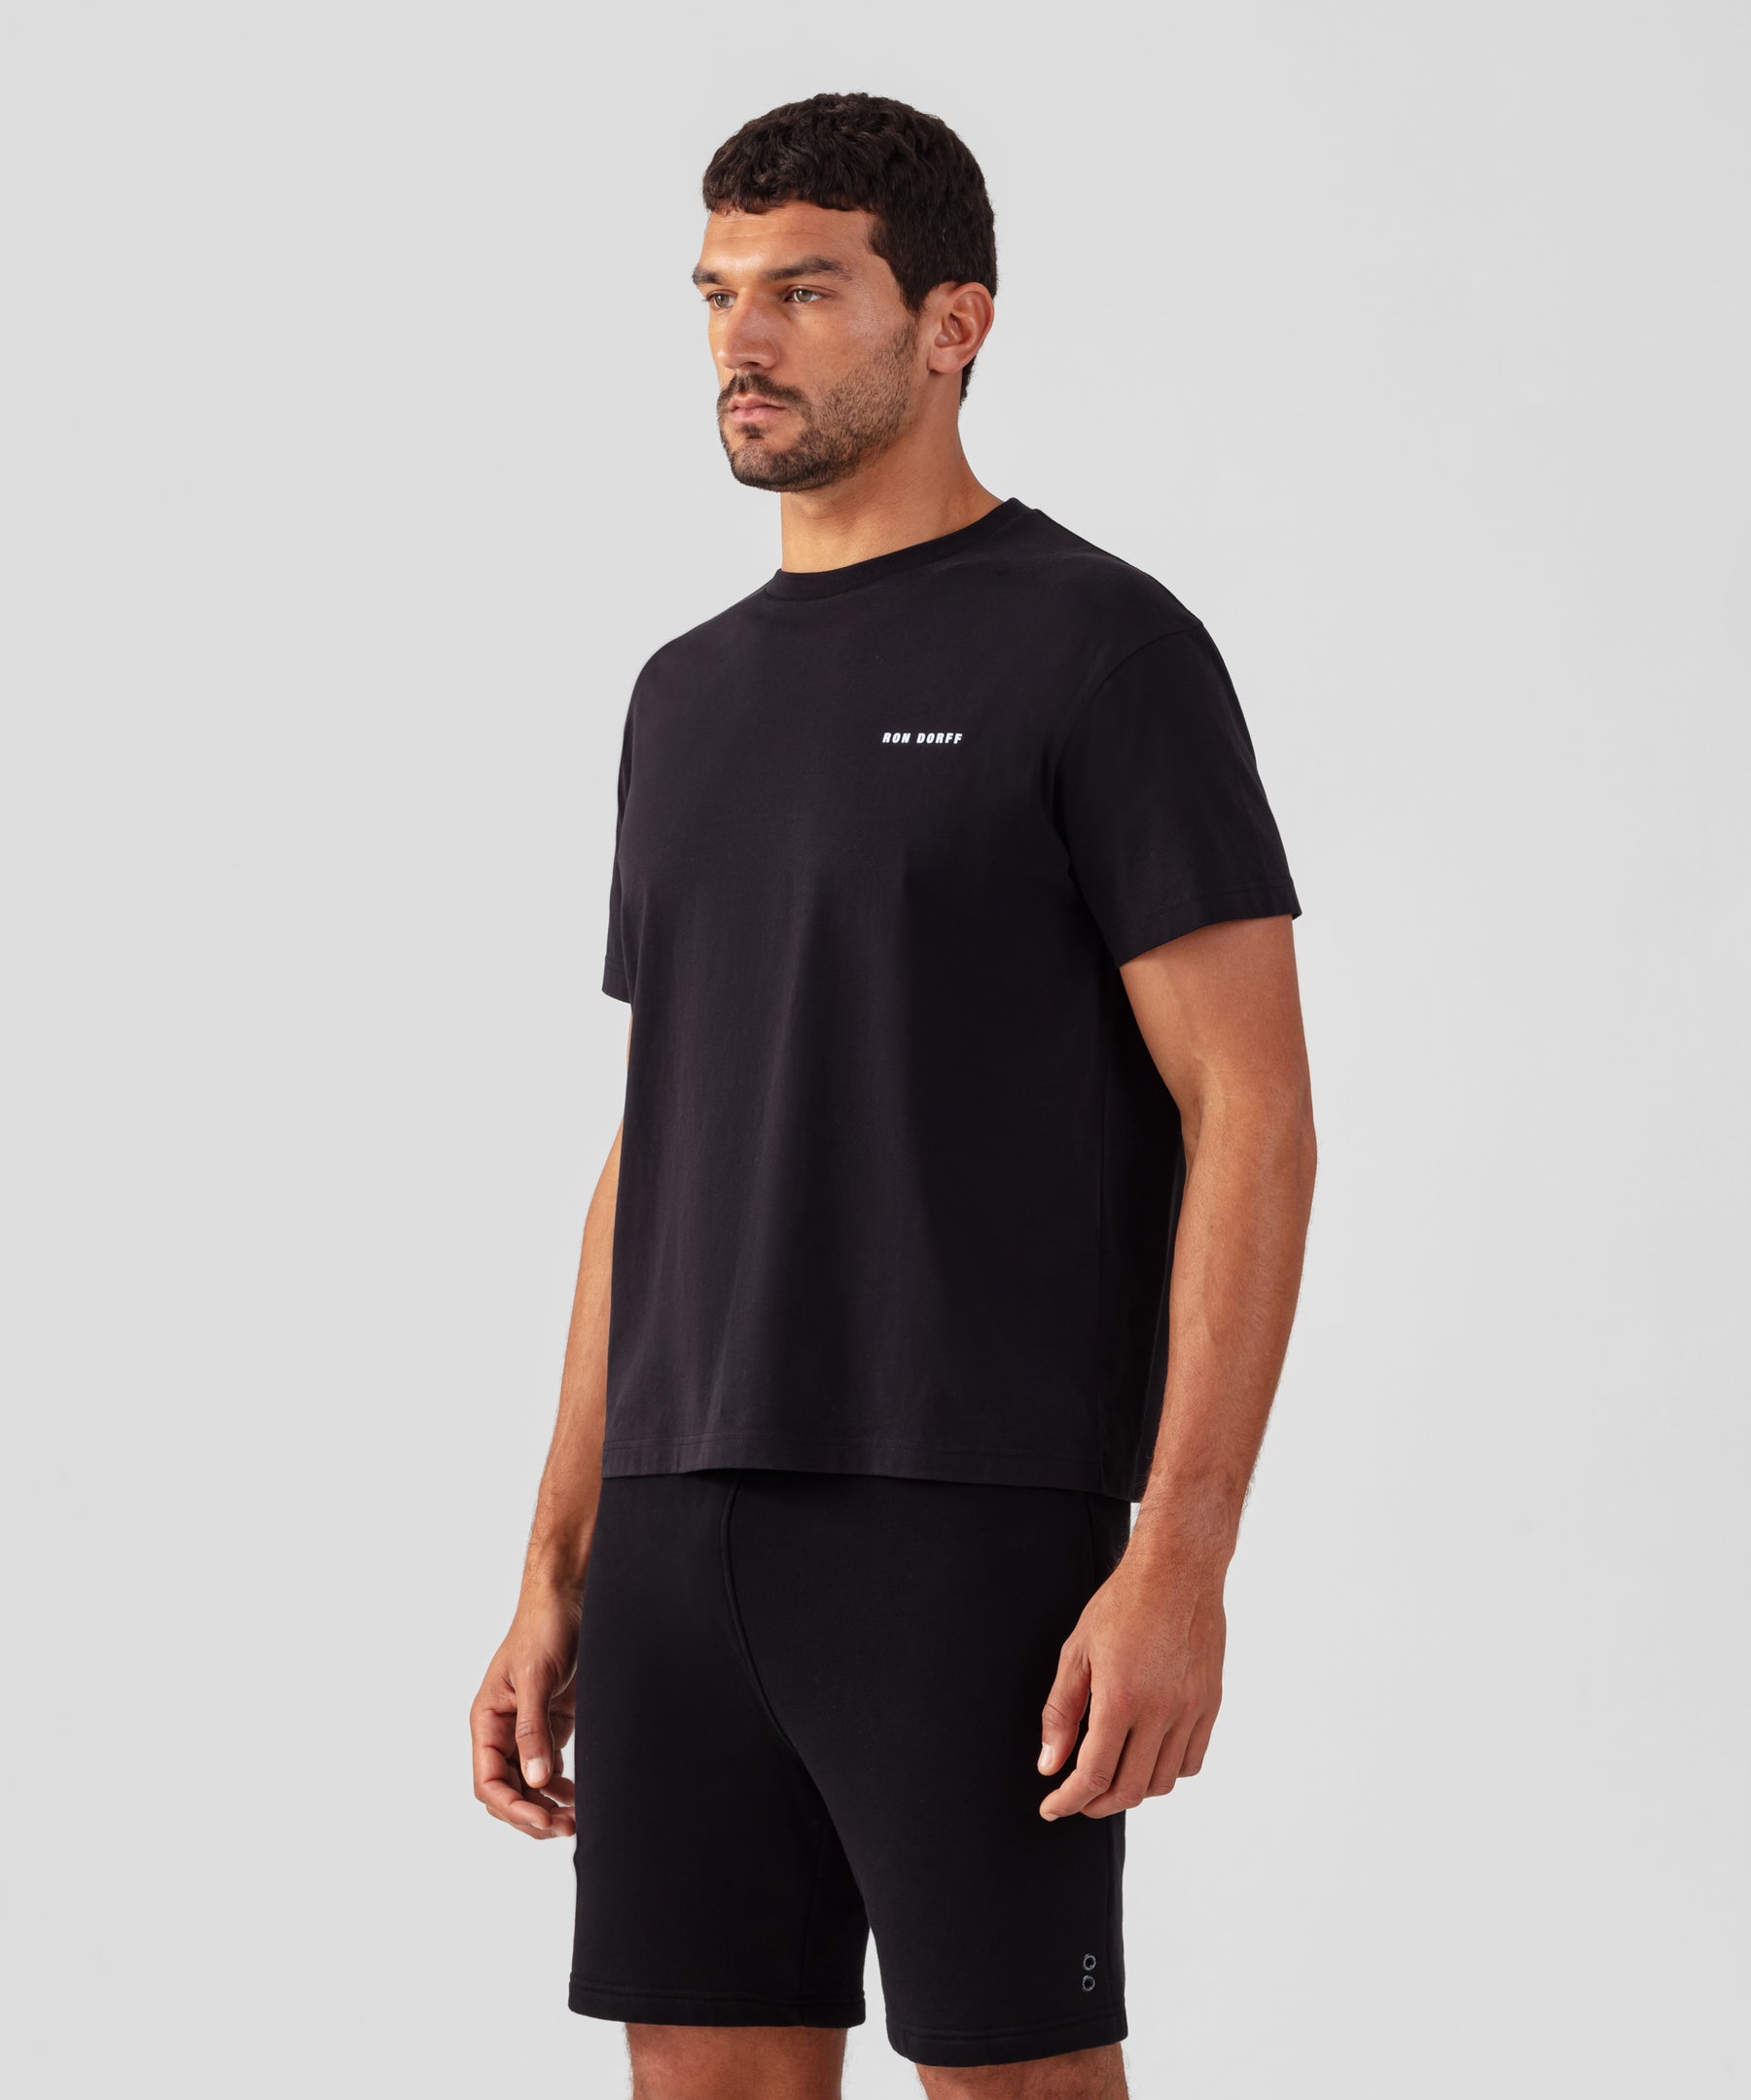 T-shirt coupe décontractée en coton organique à imprimé RON DORFF: Noir